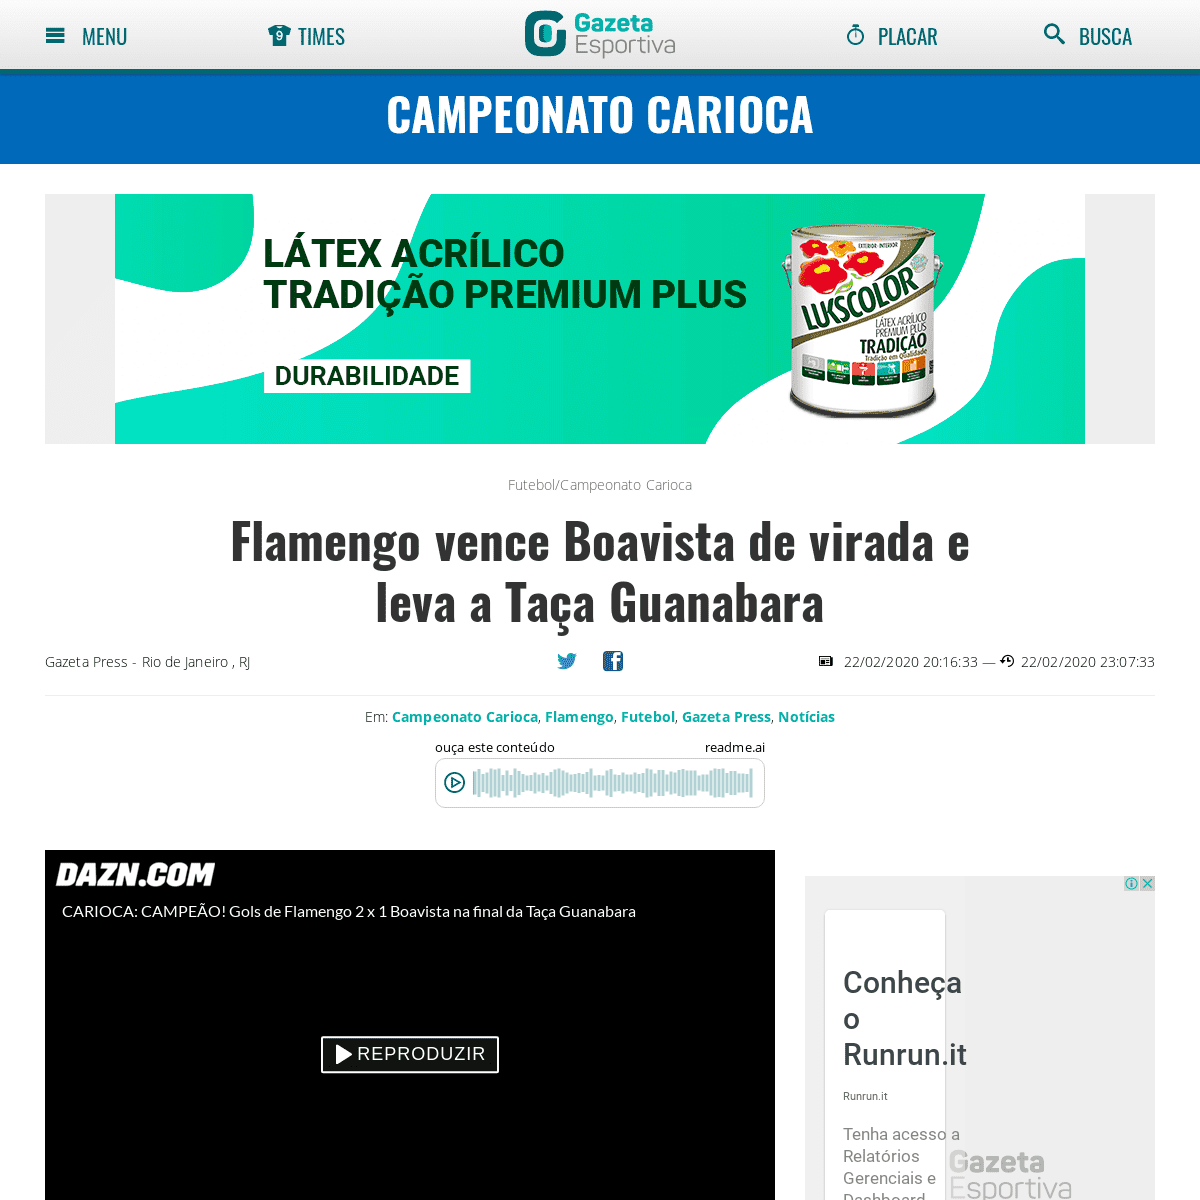 A complete backup of www.gazetaesportiva.com/campeonatos/carioca/flamengo-vence-boa-vista-de-virada-e-leva-a-taca-guanabara/